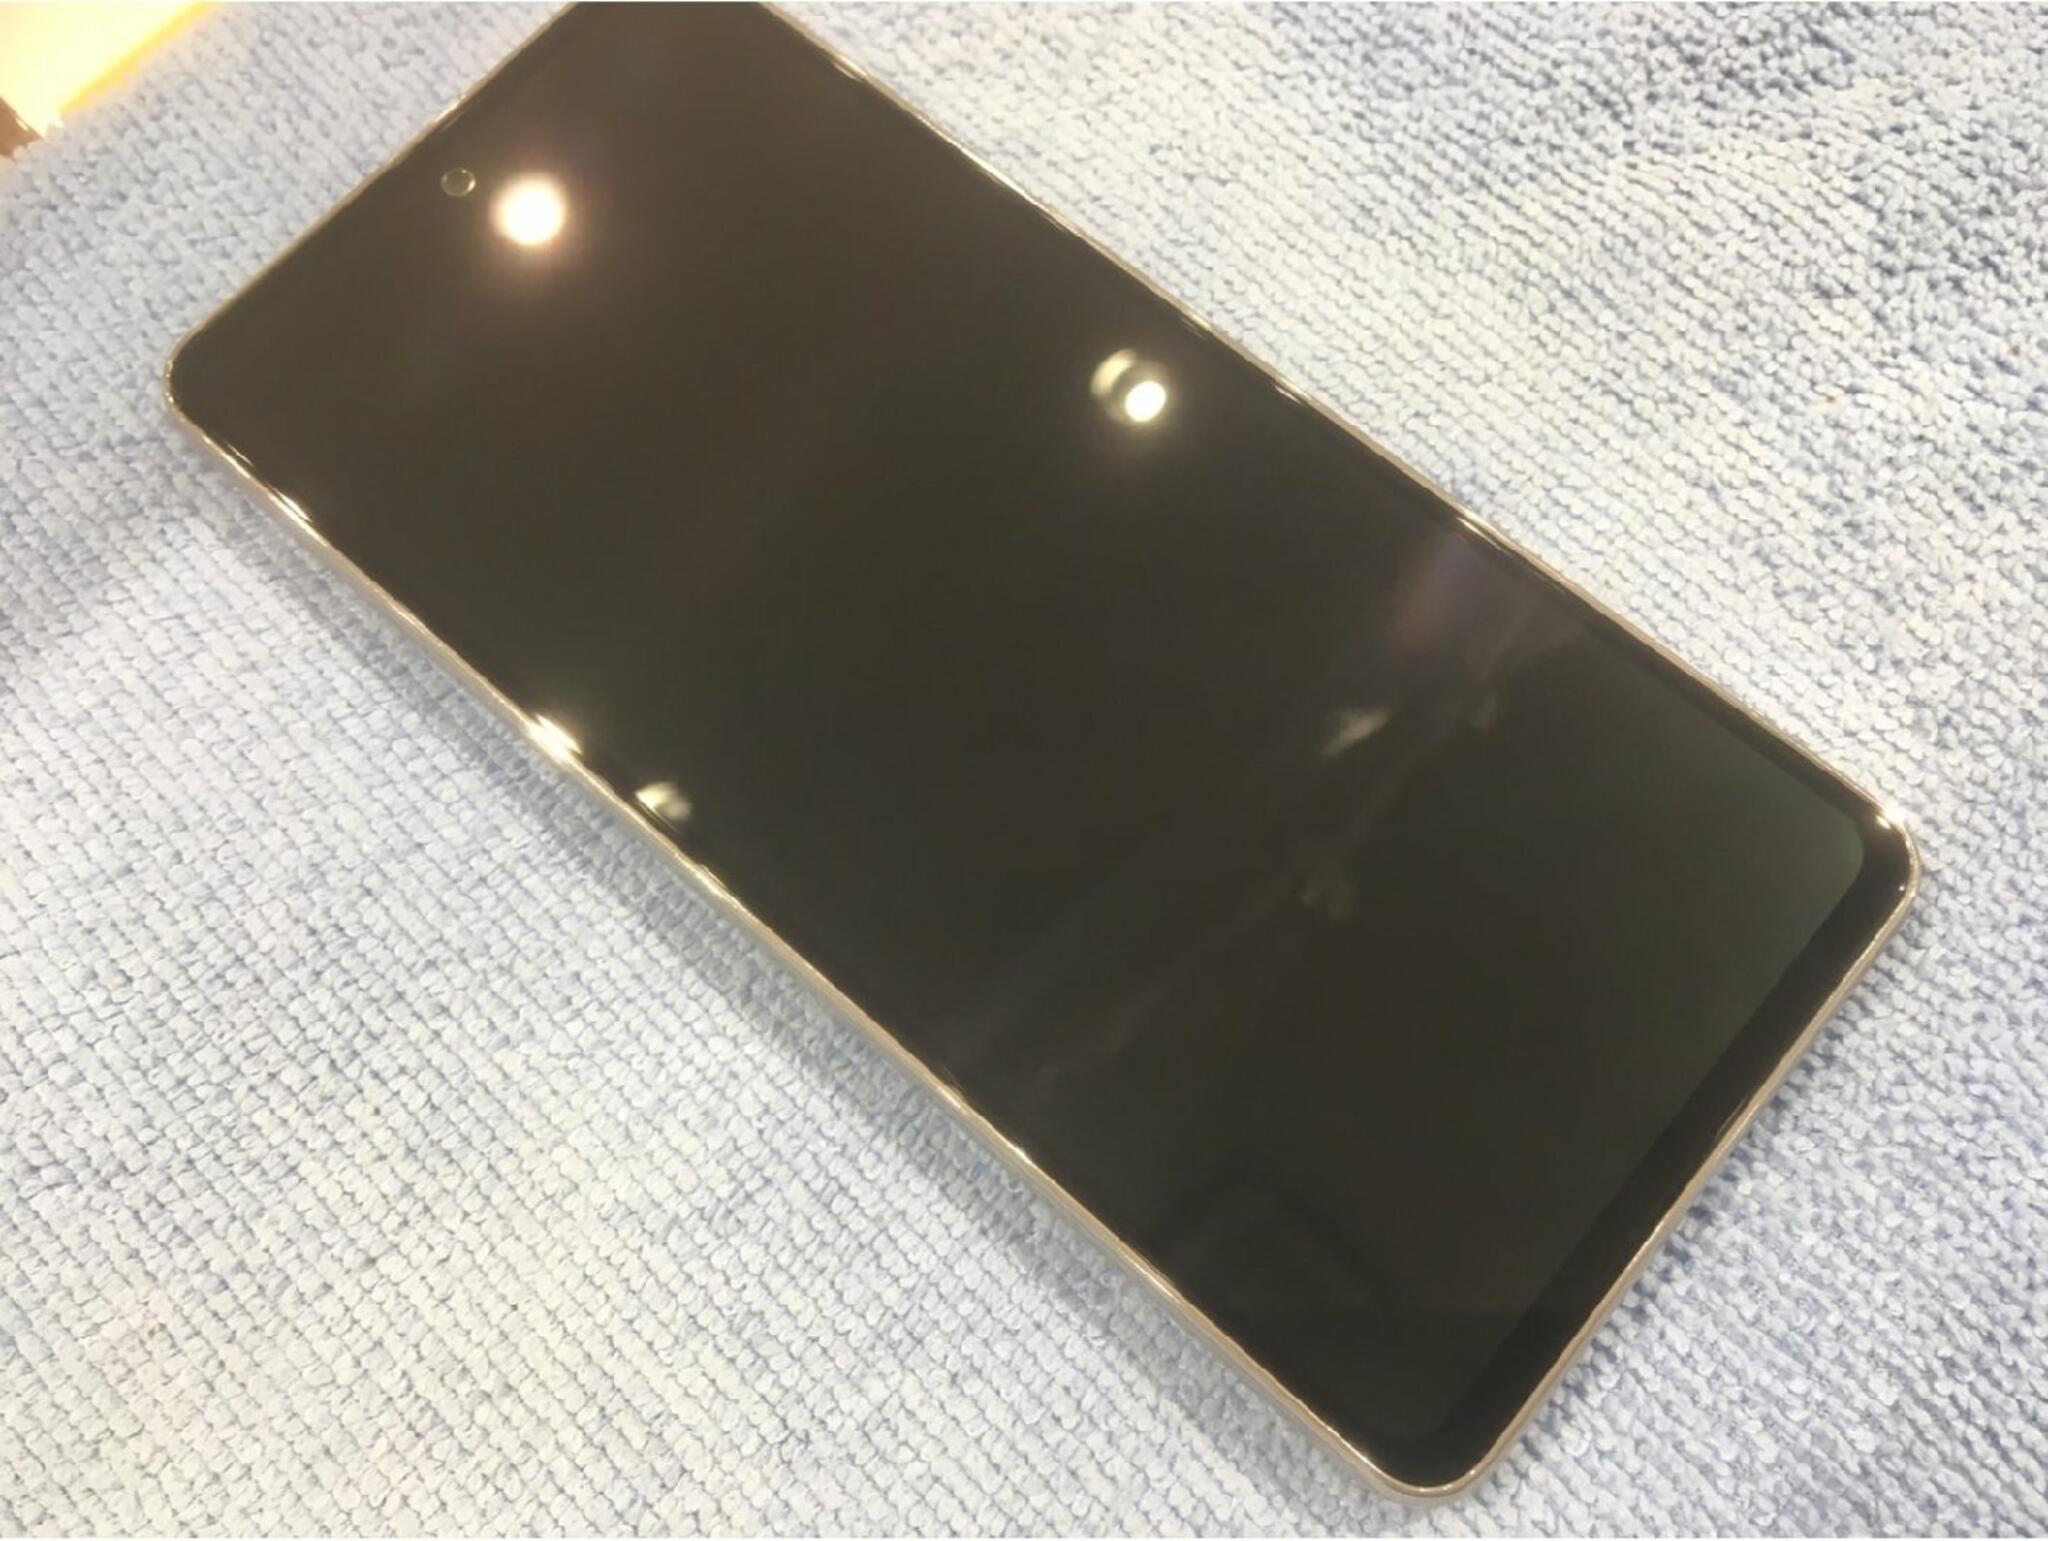 iPhone・iPad・Switch修理店 スマートクール イオンモール広島祇園店からのお知らせ(機種変をされたらガラスコーティングがオススメです)に関する写真